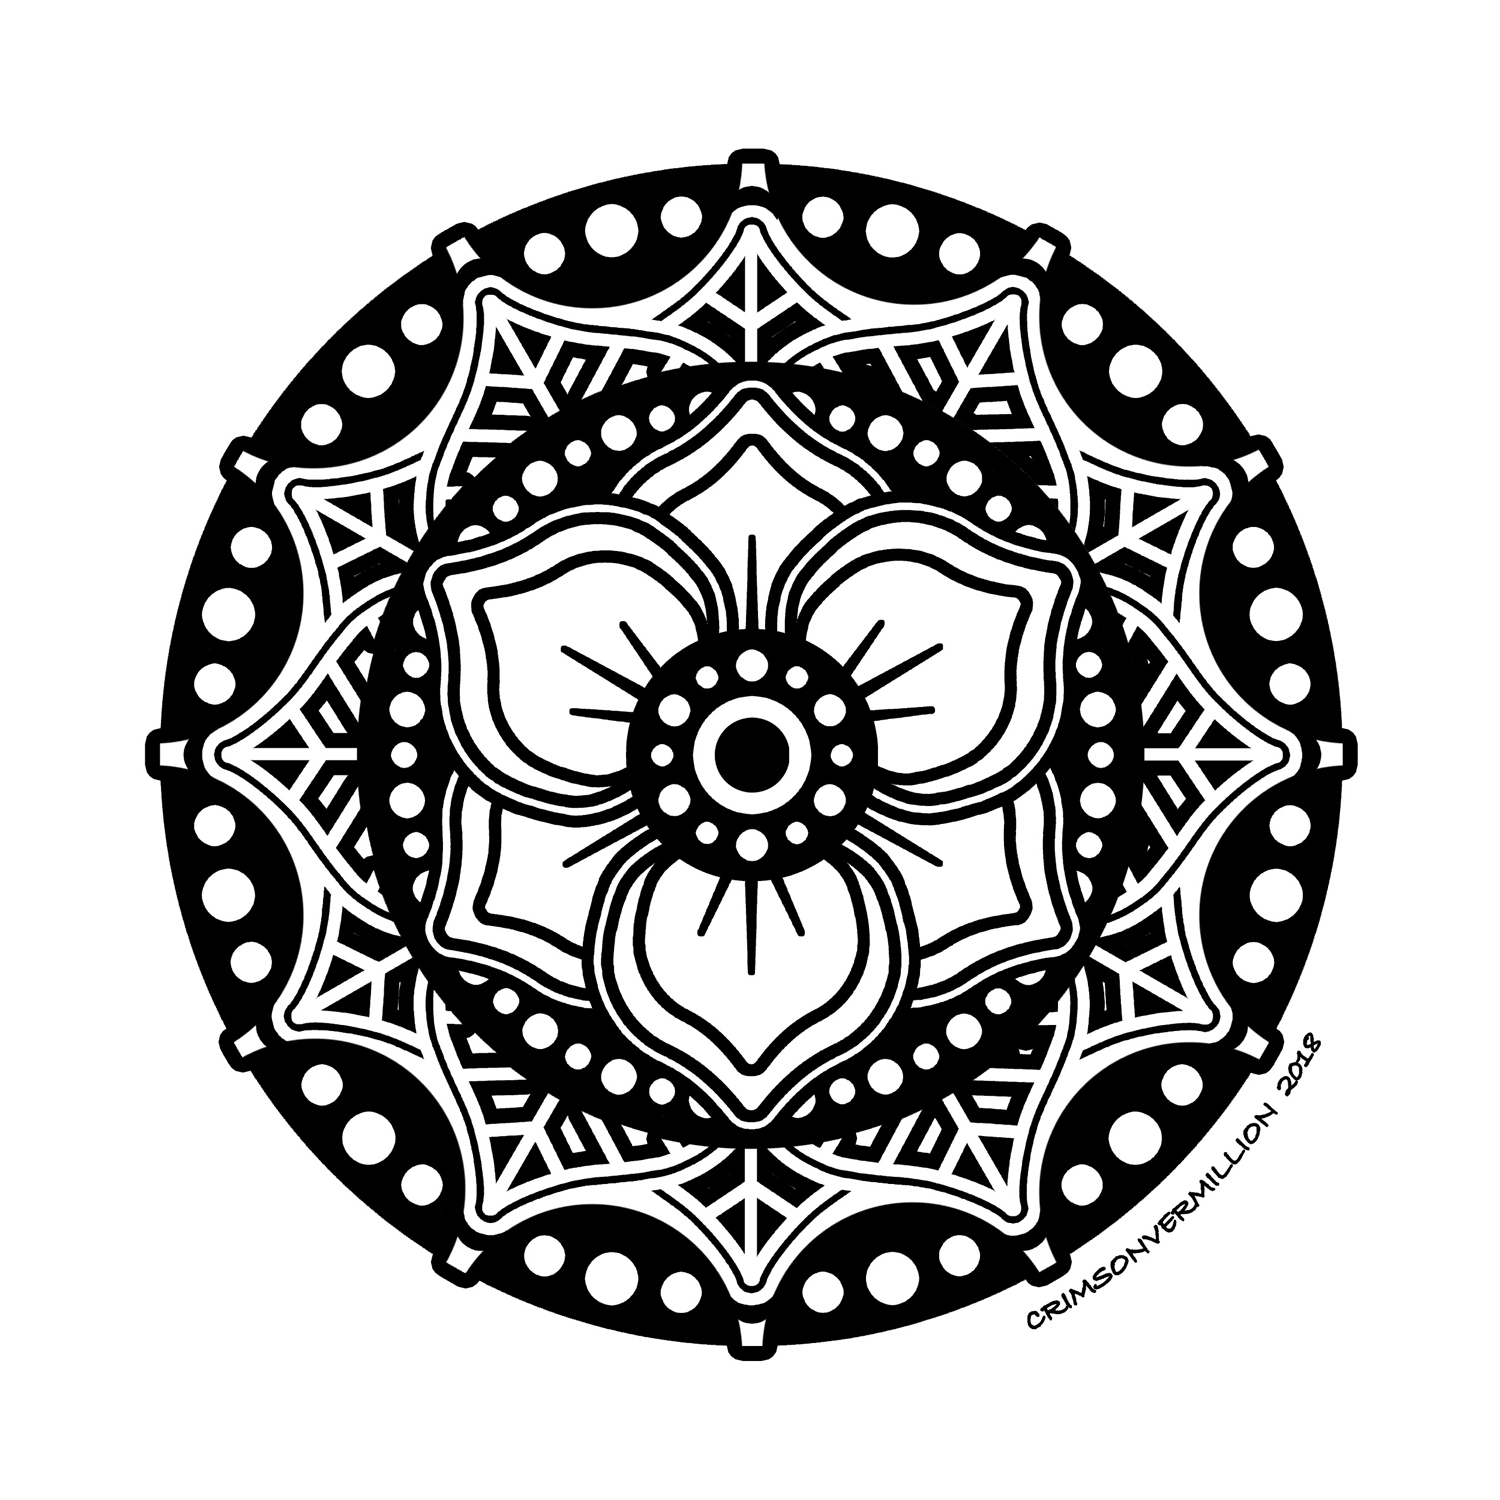 Dieses Mandala, das wie Spitze gestaltet ist, ist eine wahre Augenweide.